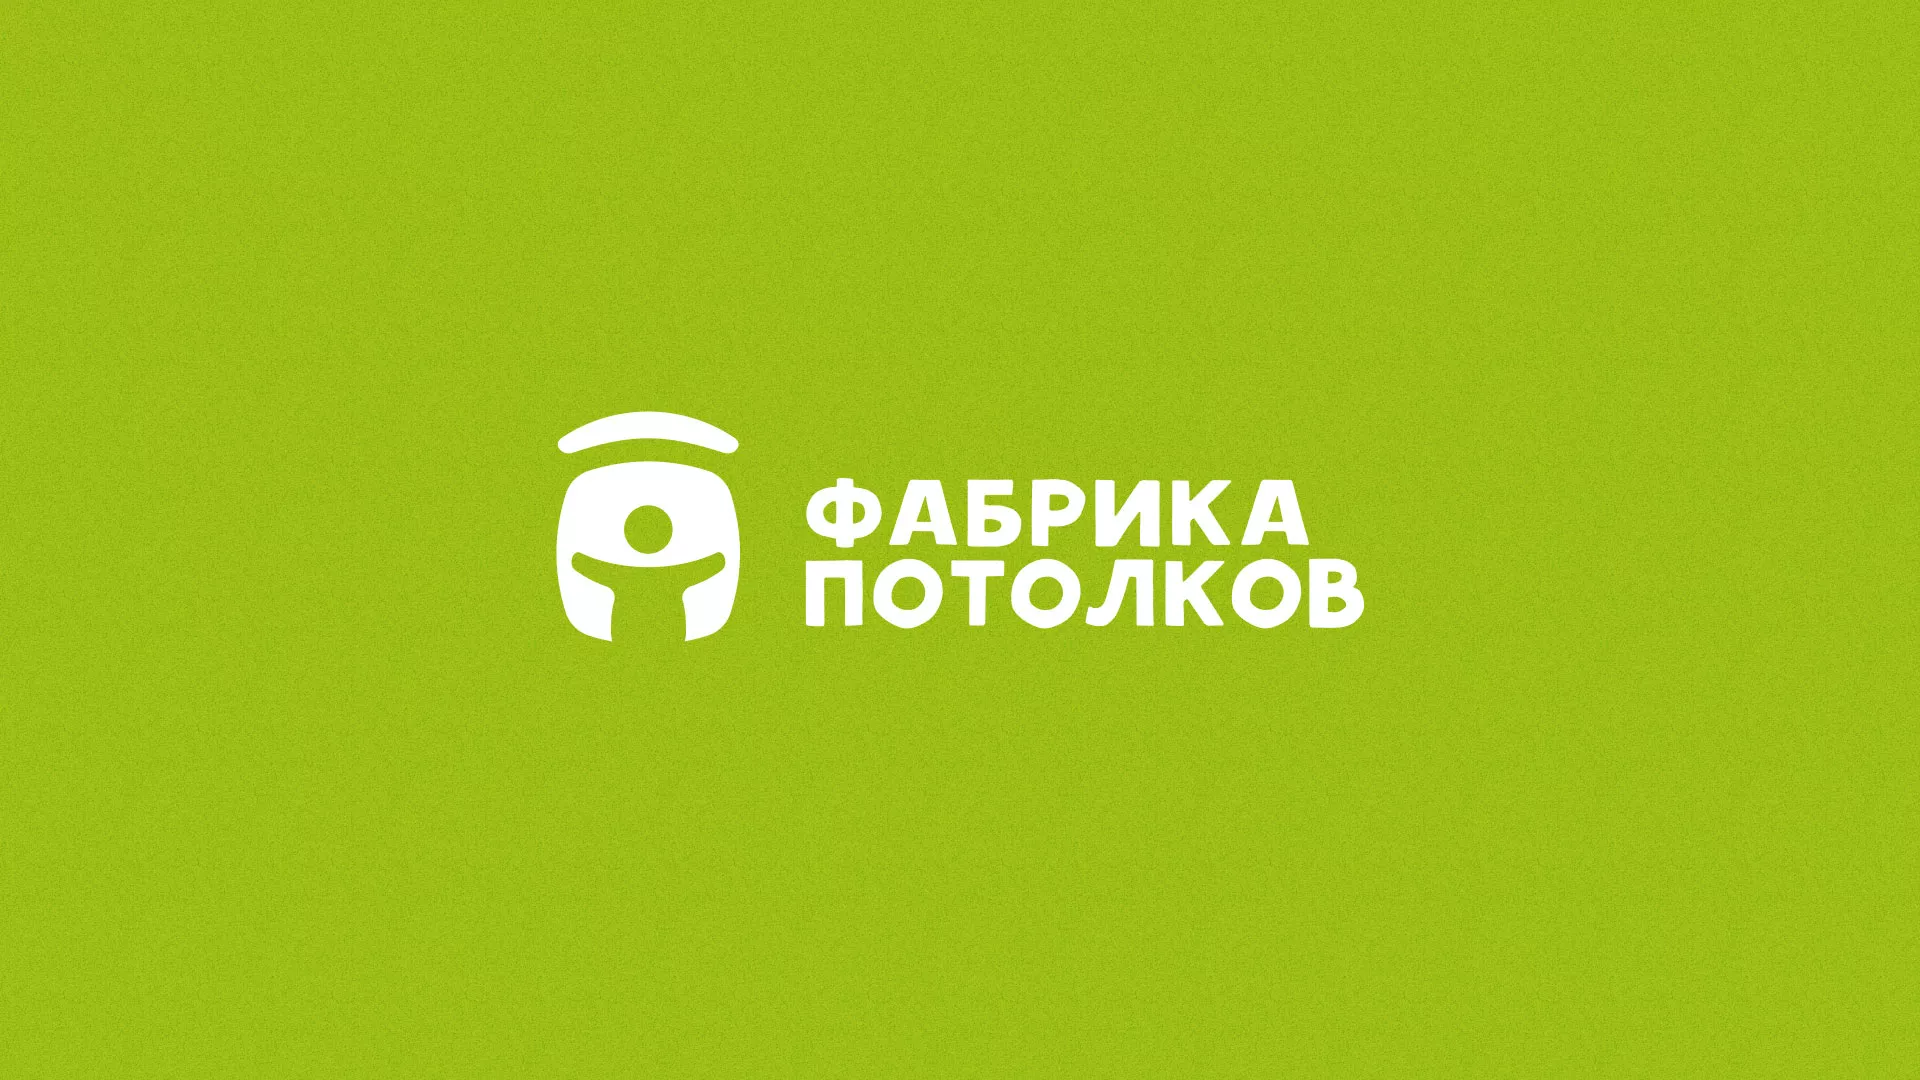 Разработка логотипа для производства натяжных потолков в Шенкурске